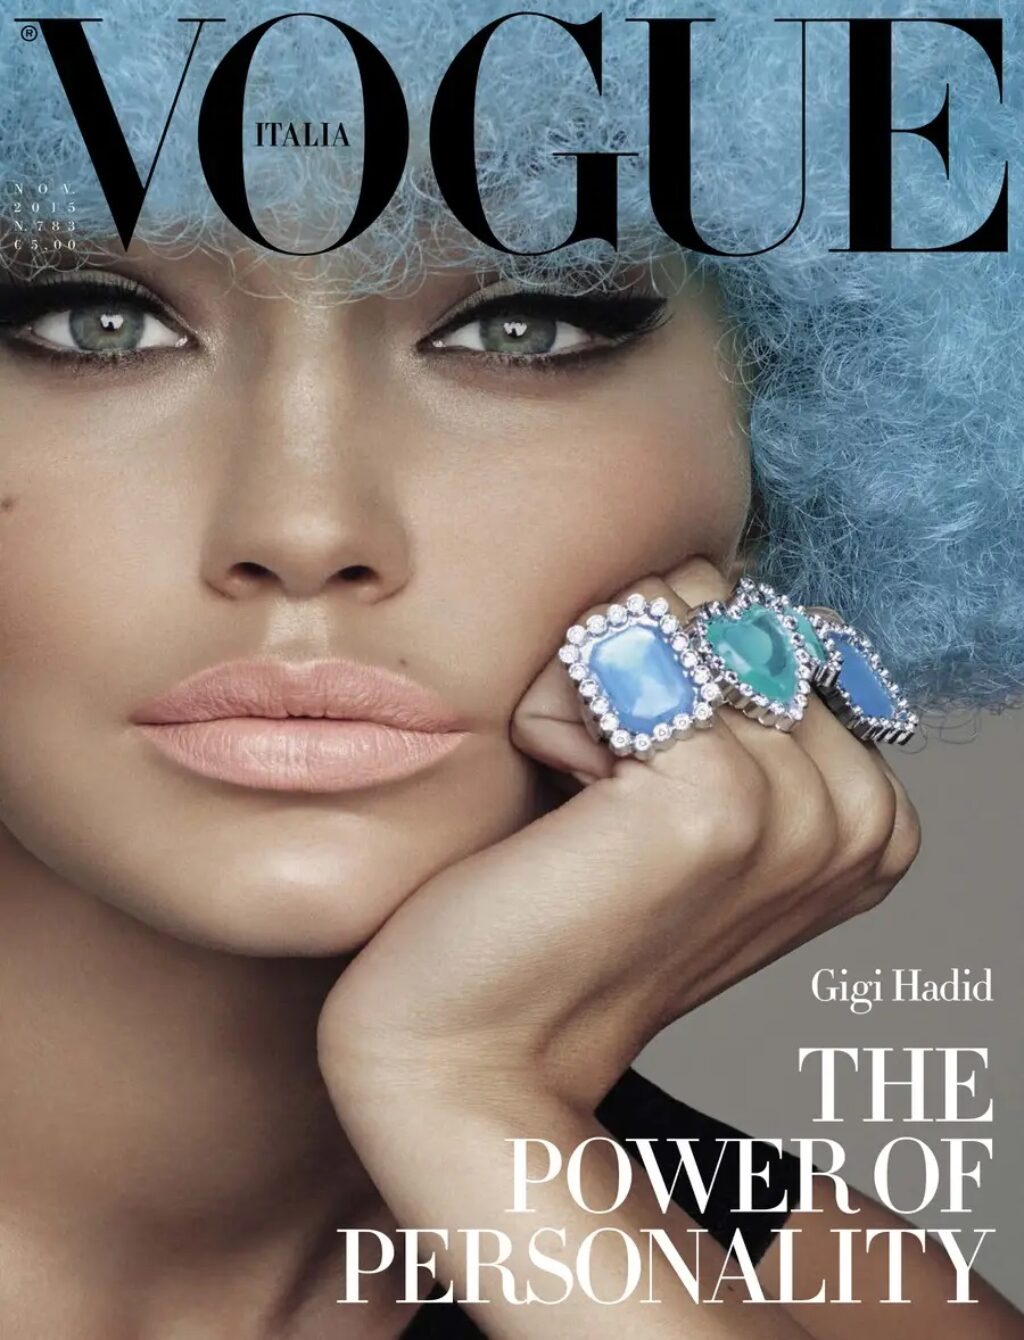 Portada de Vogue Italia donde Gigi Hadid aparece con un maquillaje muy oscuro que algunos consideraron blackface.